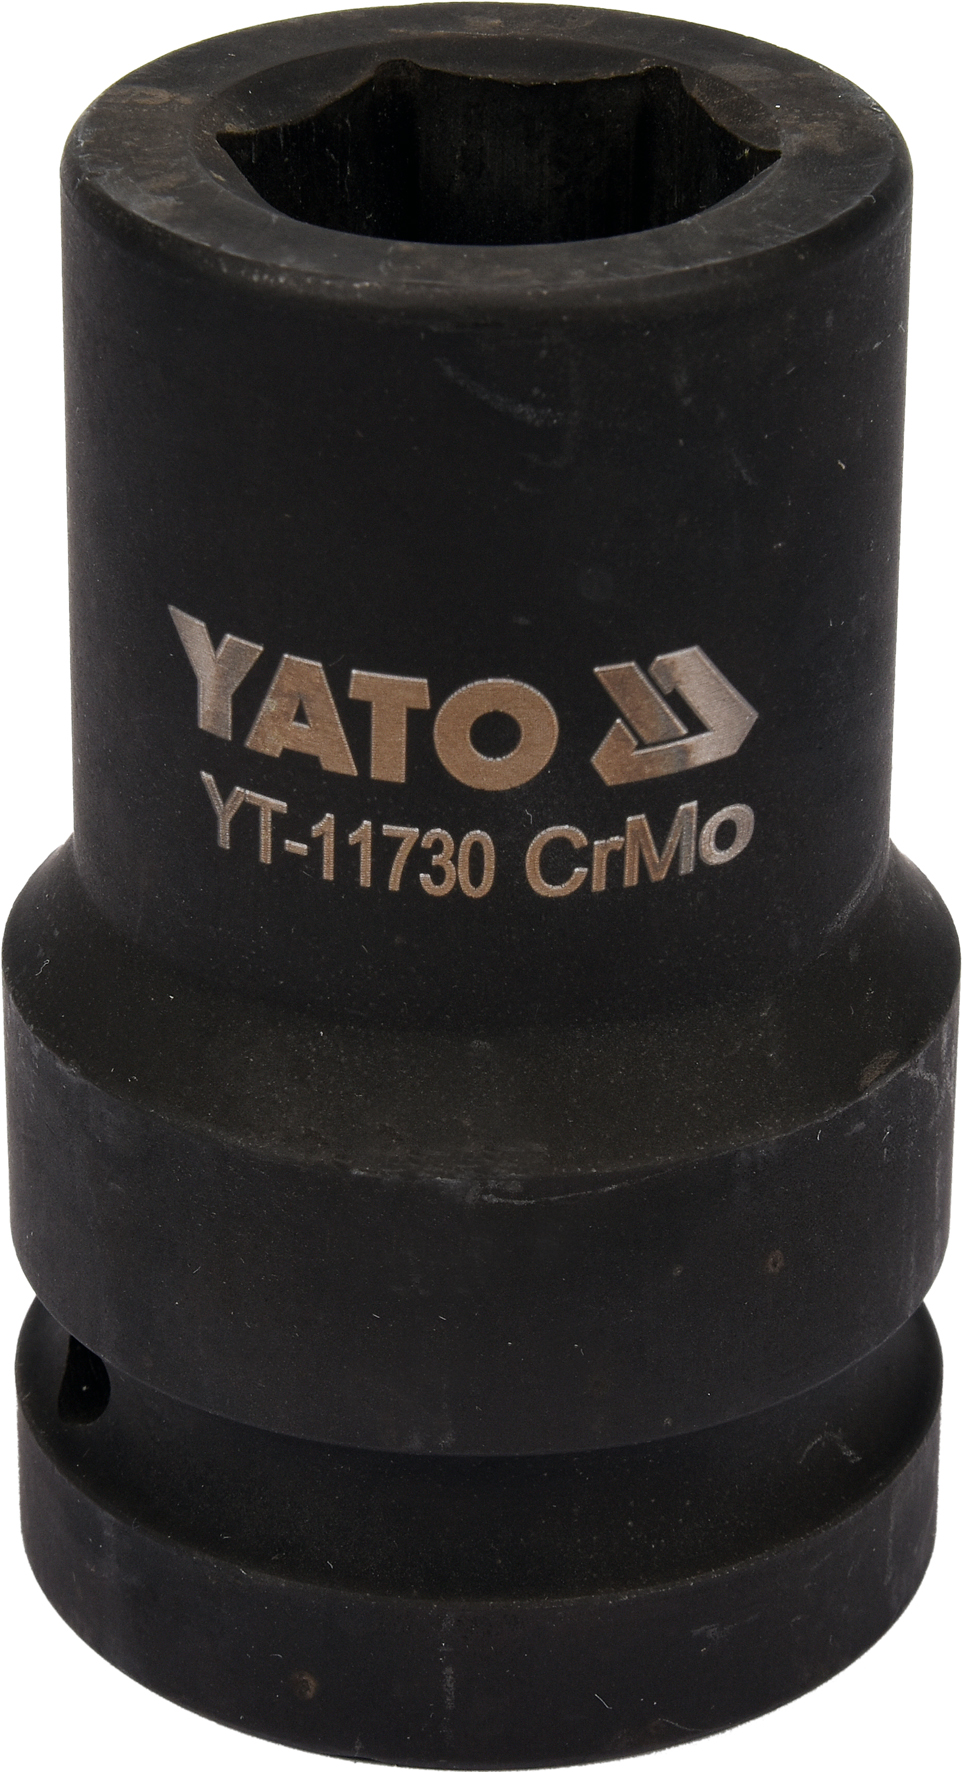 Головка торцевая ударная 1" 6гр. 24мм L80мм CrMo  YATO YT-11730